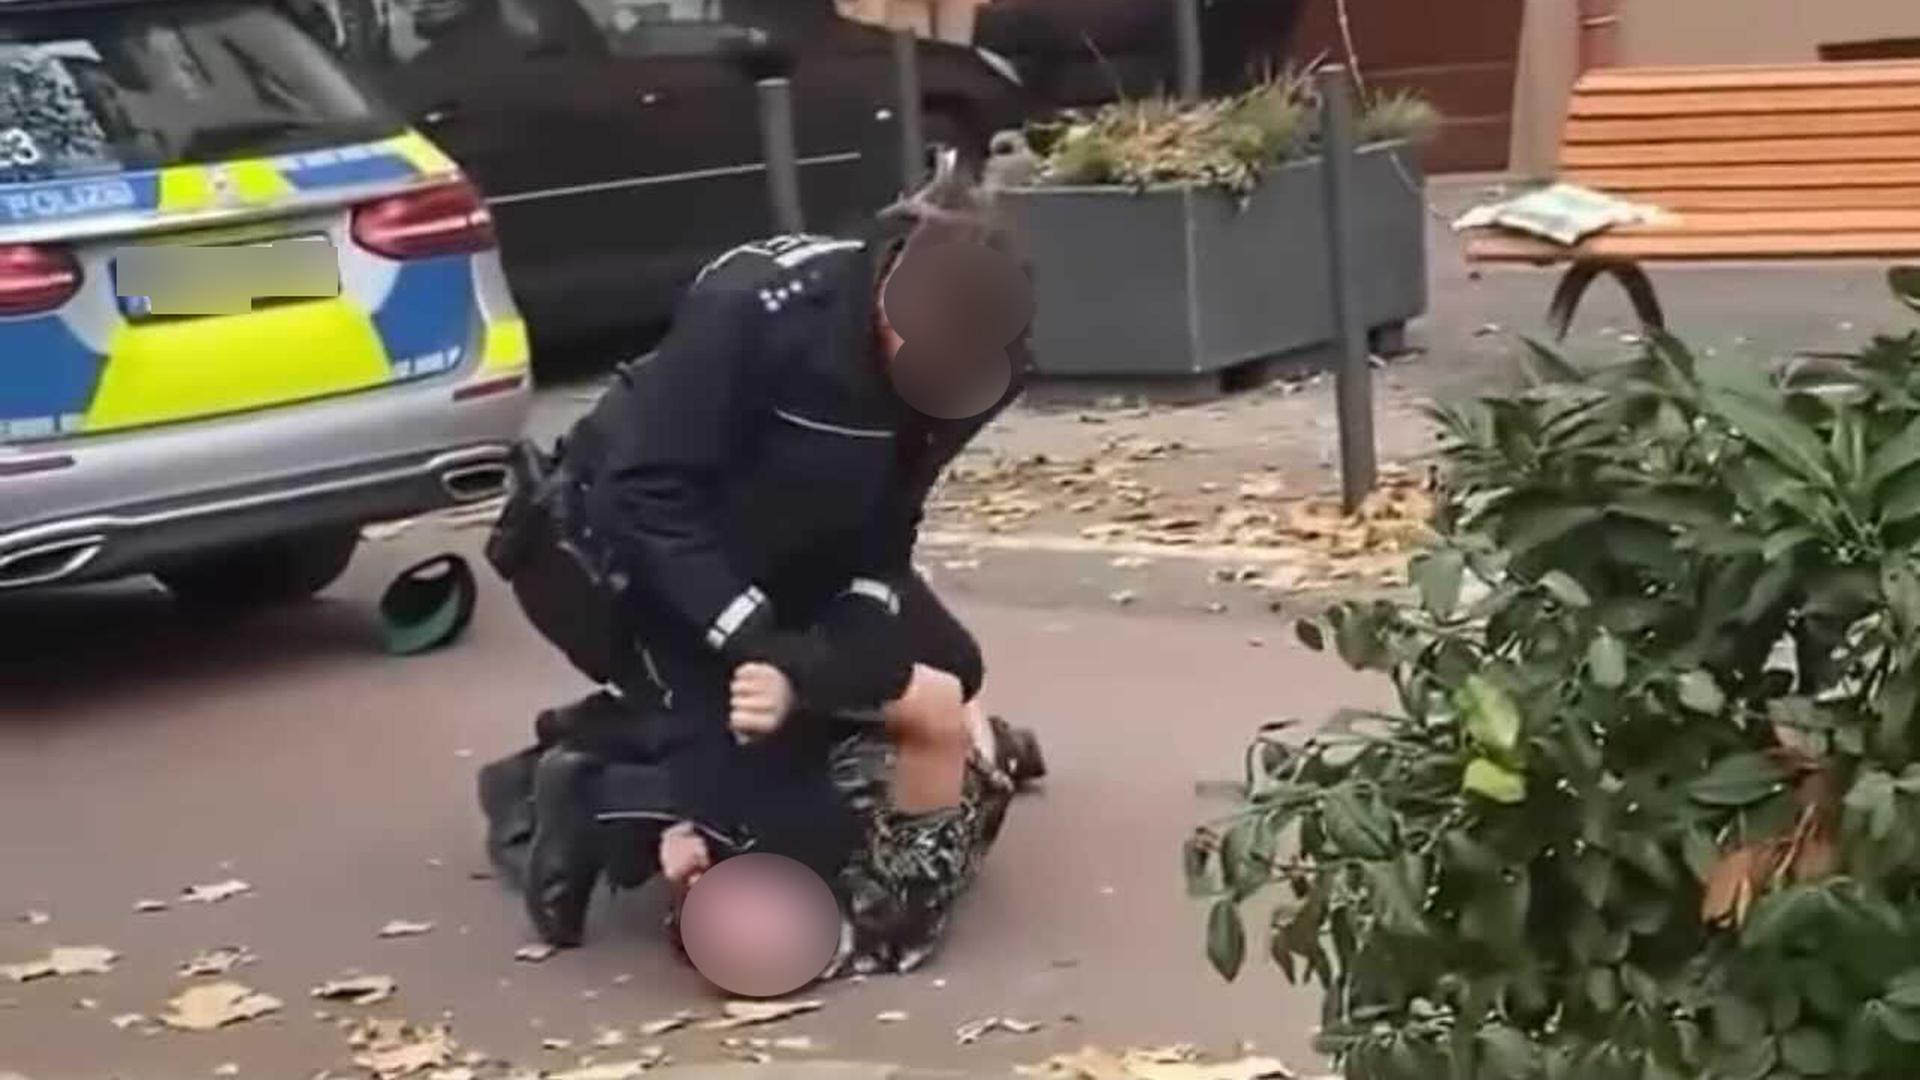 Umstrittene Festnahme in Pforzheim durch Polizisten